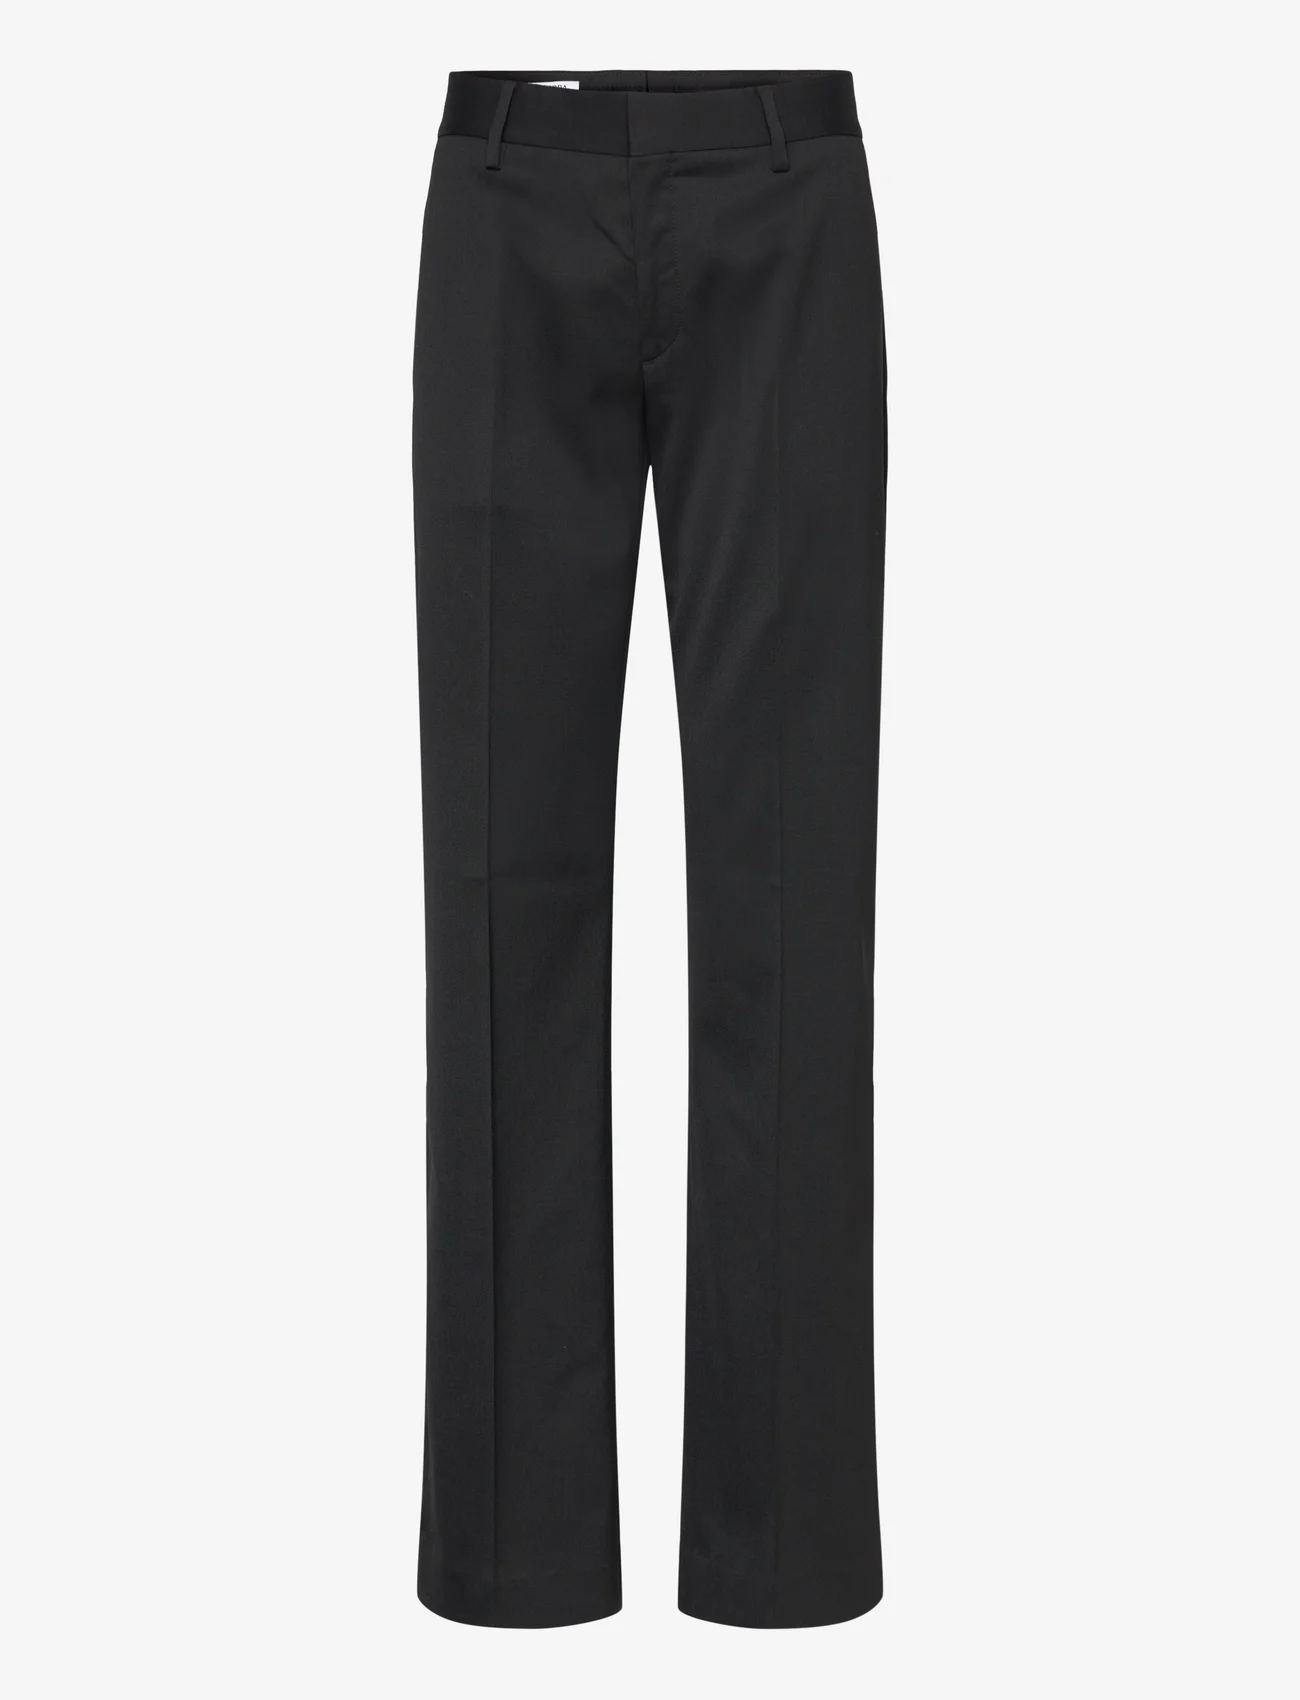 Filippa K - Bootcut Trousers - lietišķā stila bikses - black - 0